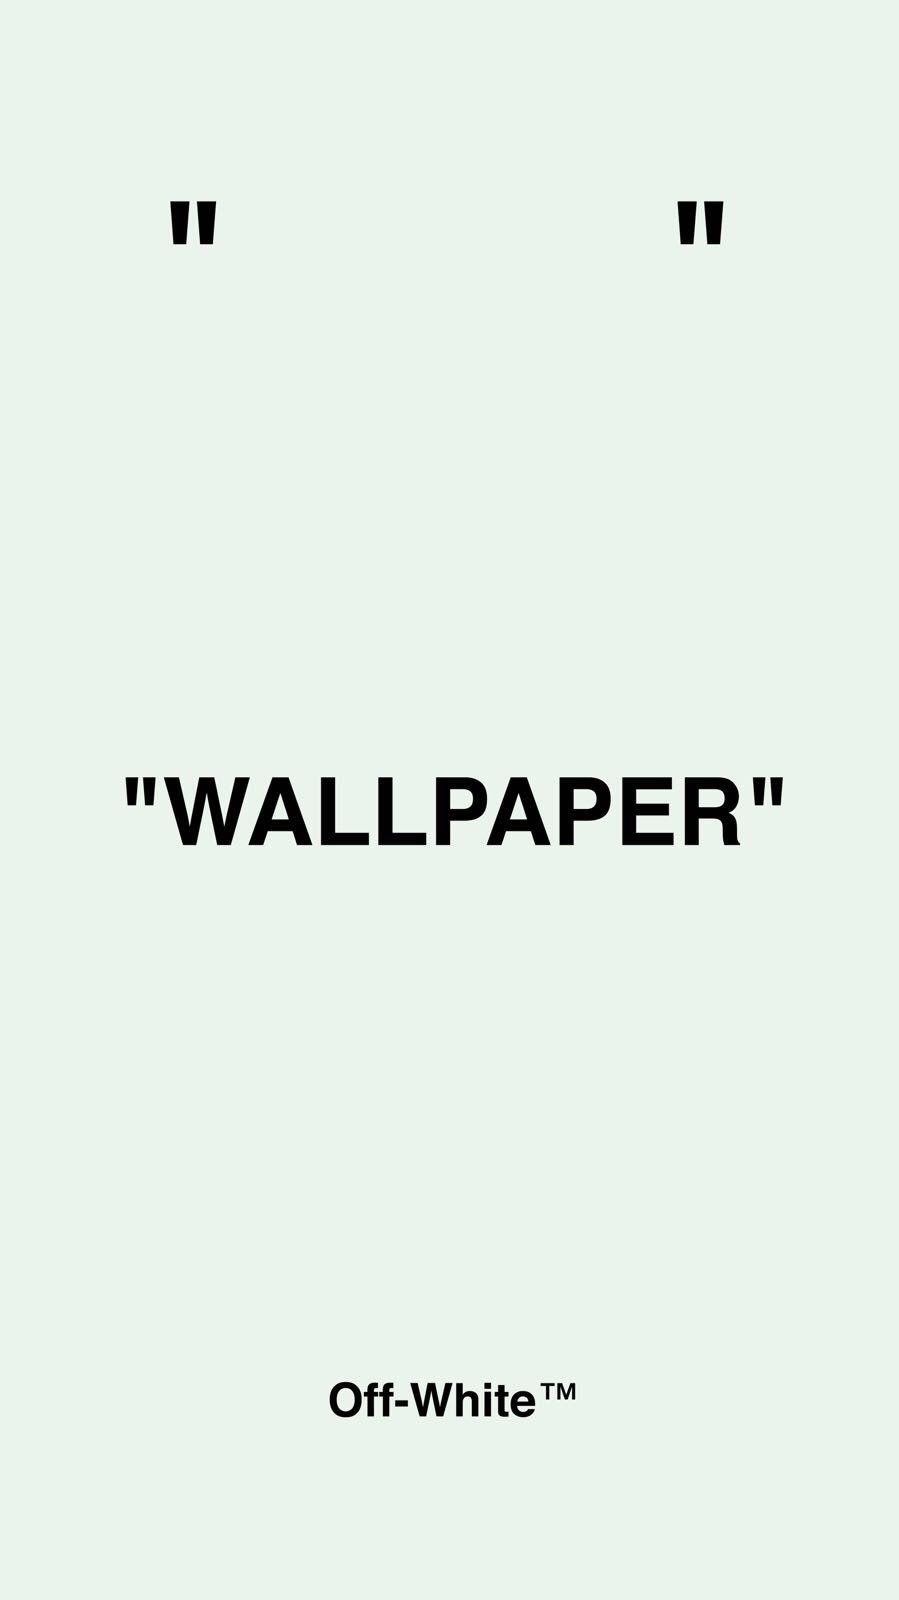 OFF-WHITE Wallpapers - Top Những Hình Ảnh Đẹp